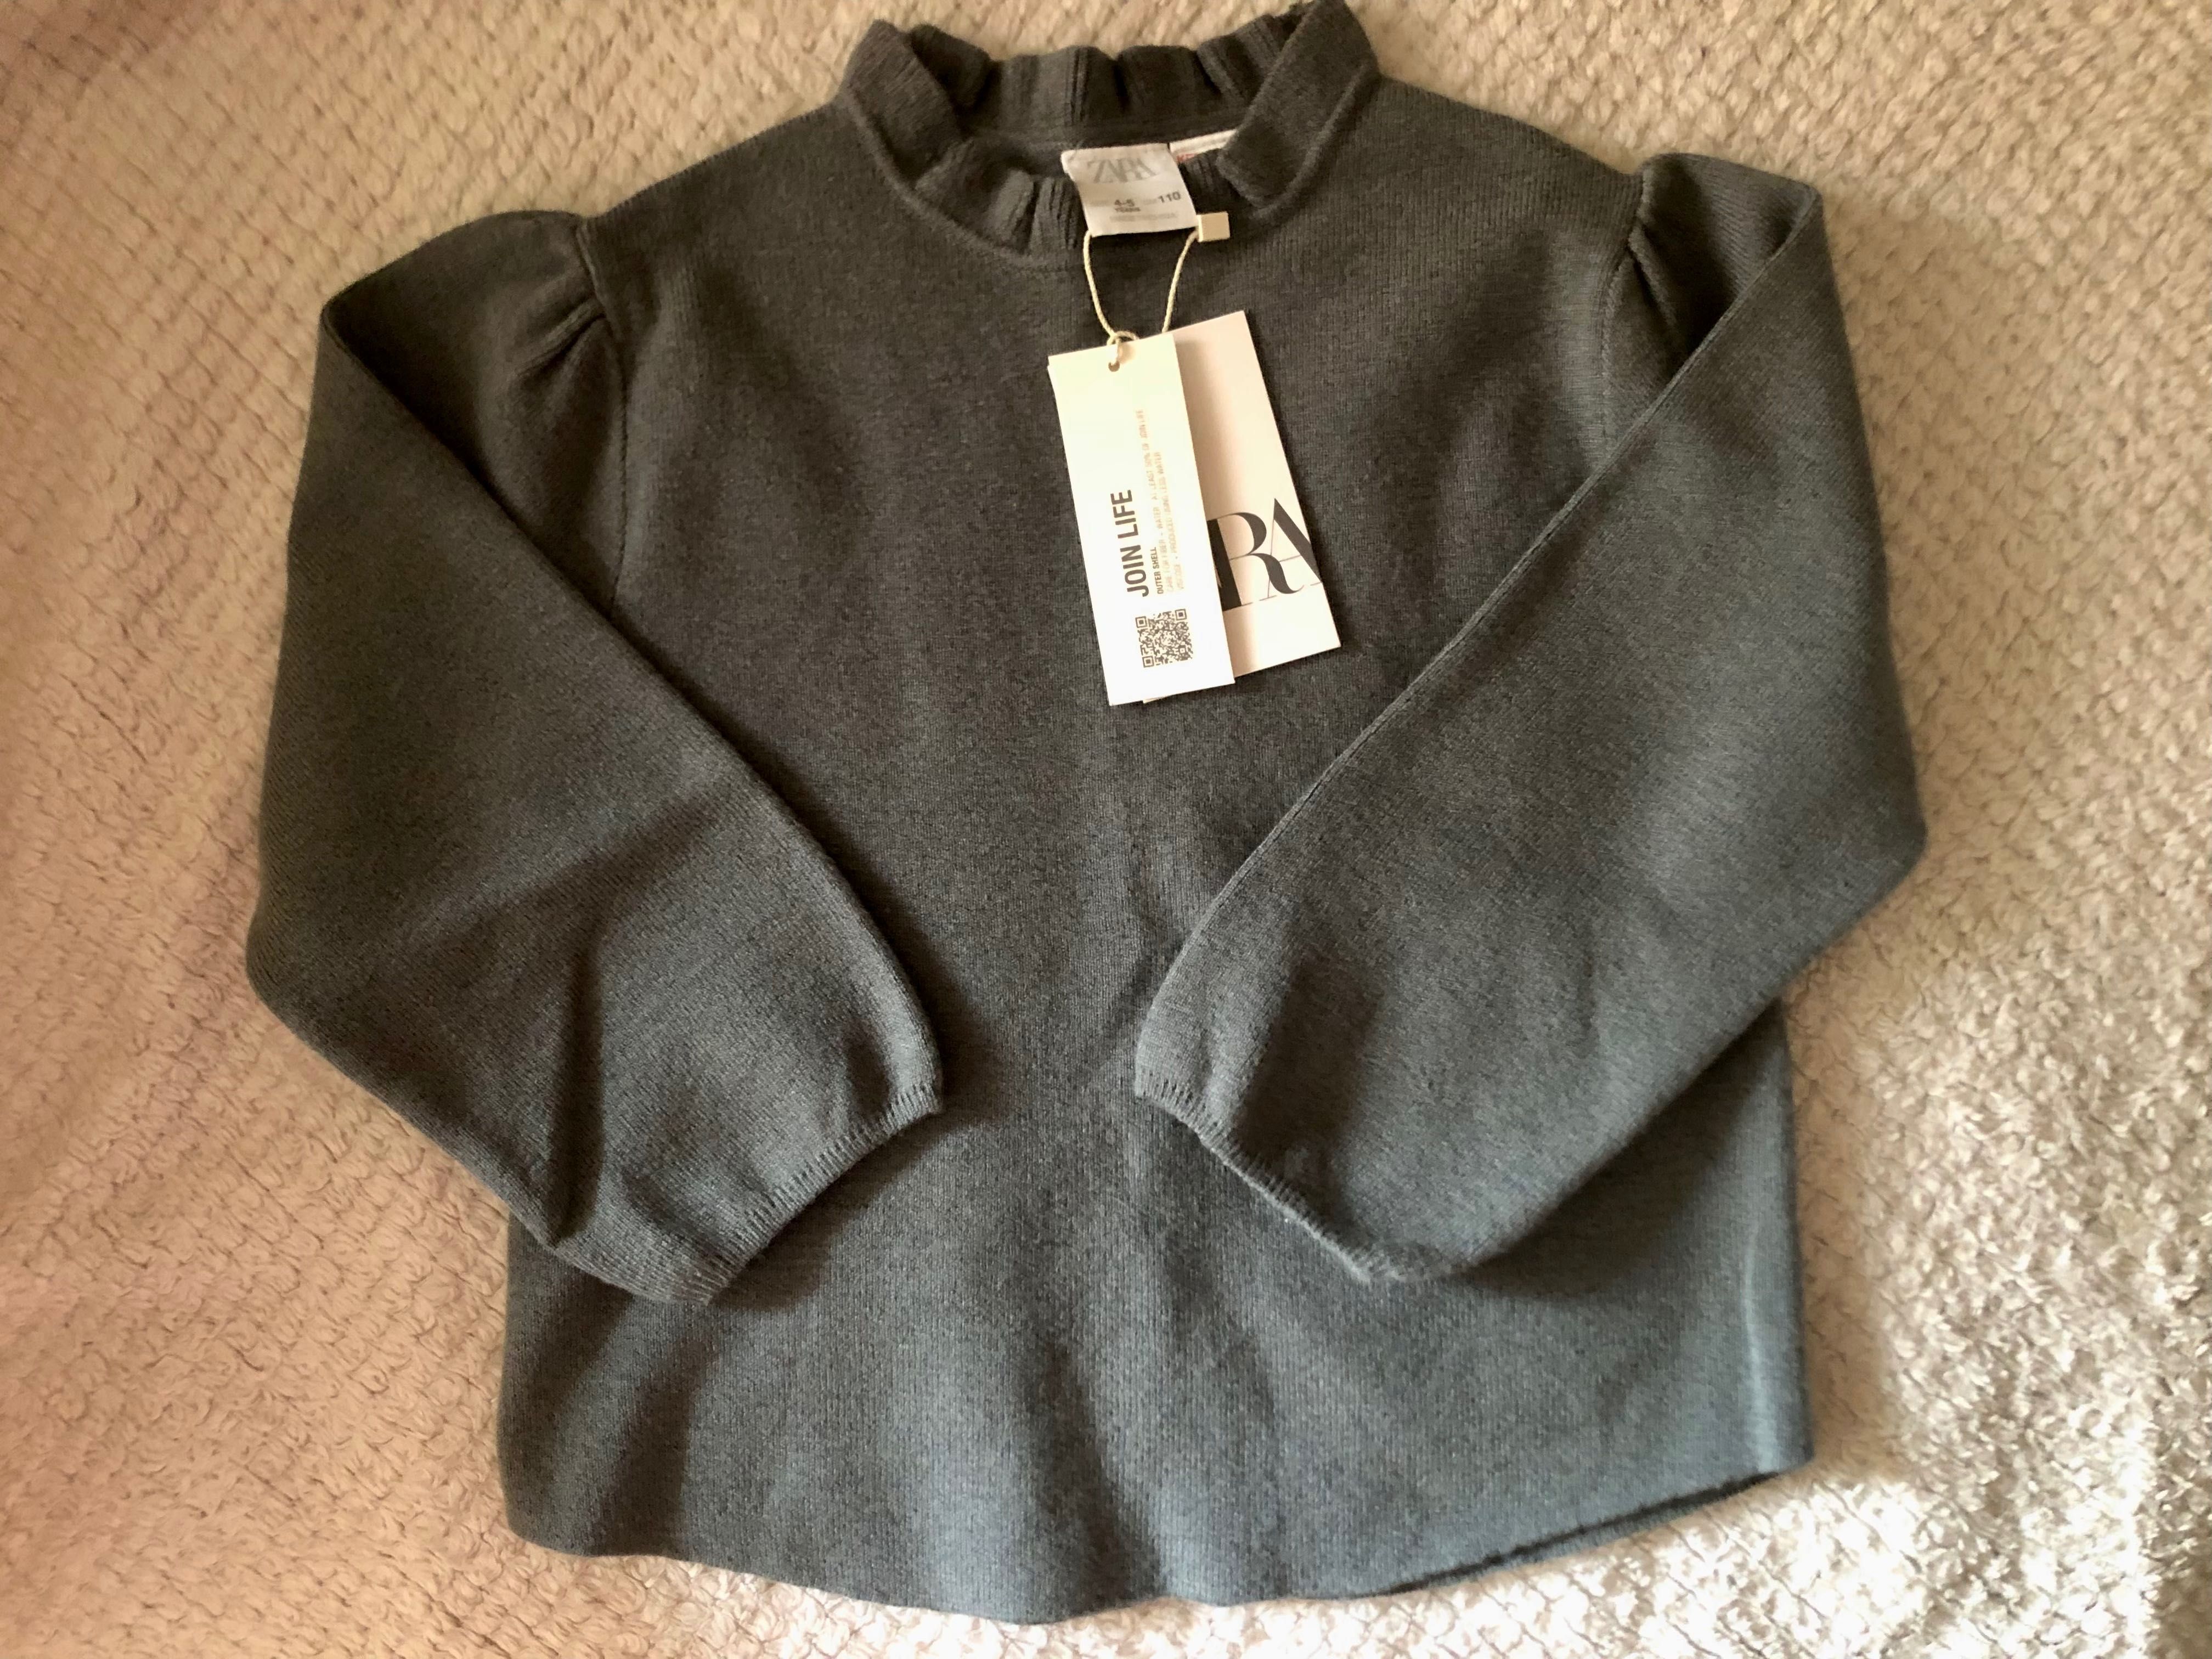 Nowy sweter ZARA, sweterek dla dziewczynki 110 cm na 4-5 lat